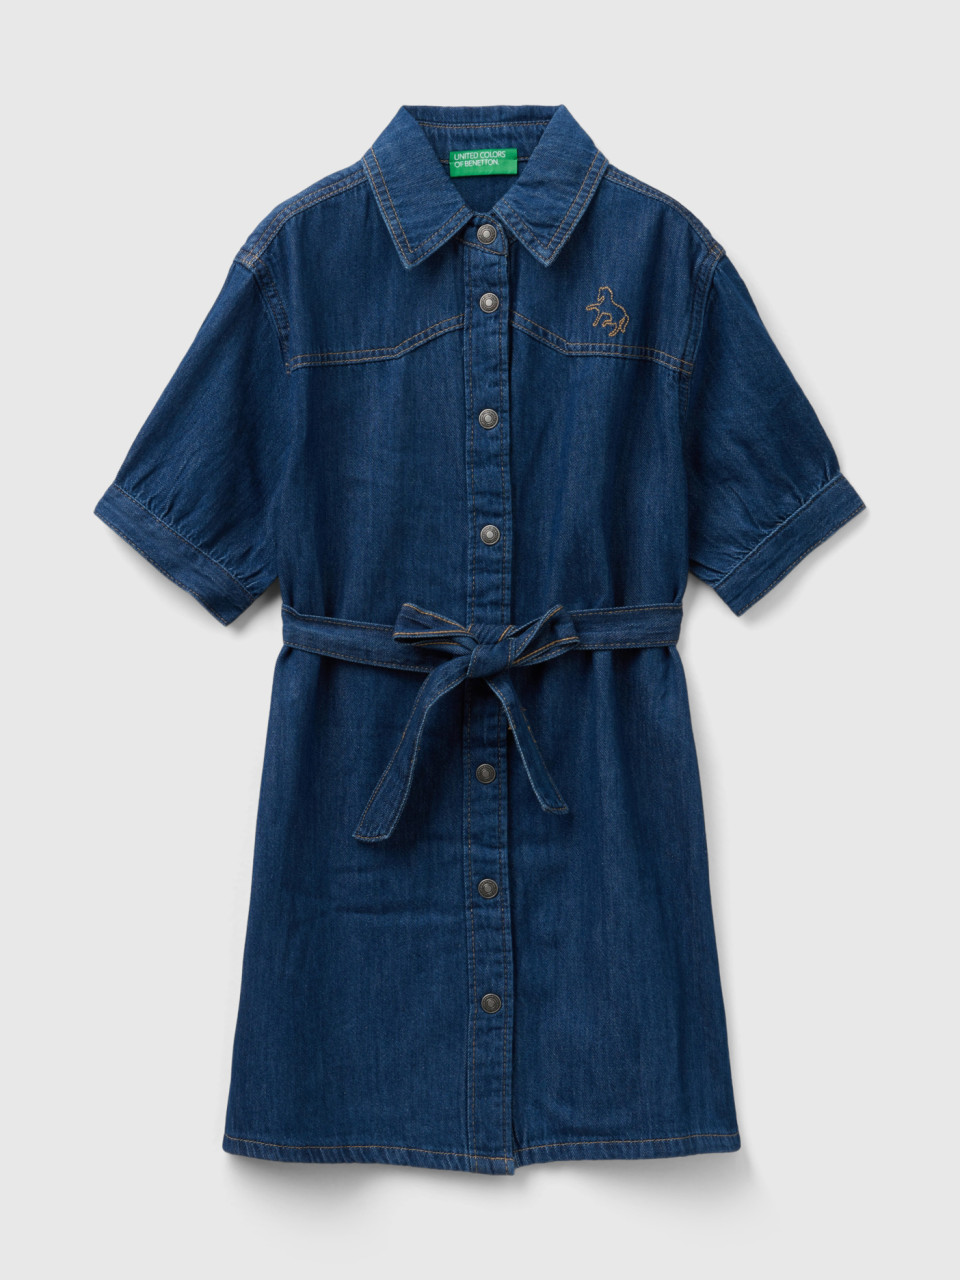 Benetton, Denim Shirt Dress, Dark Blue, Kids